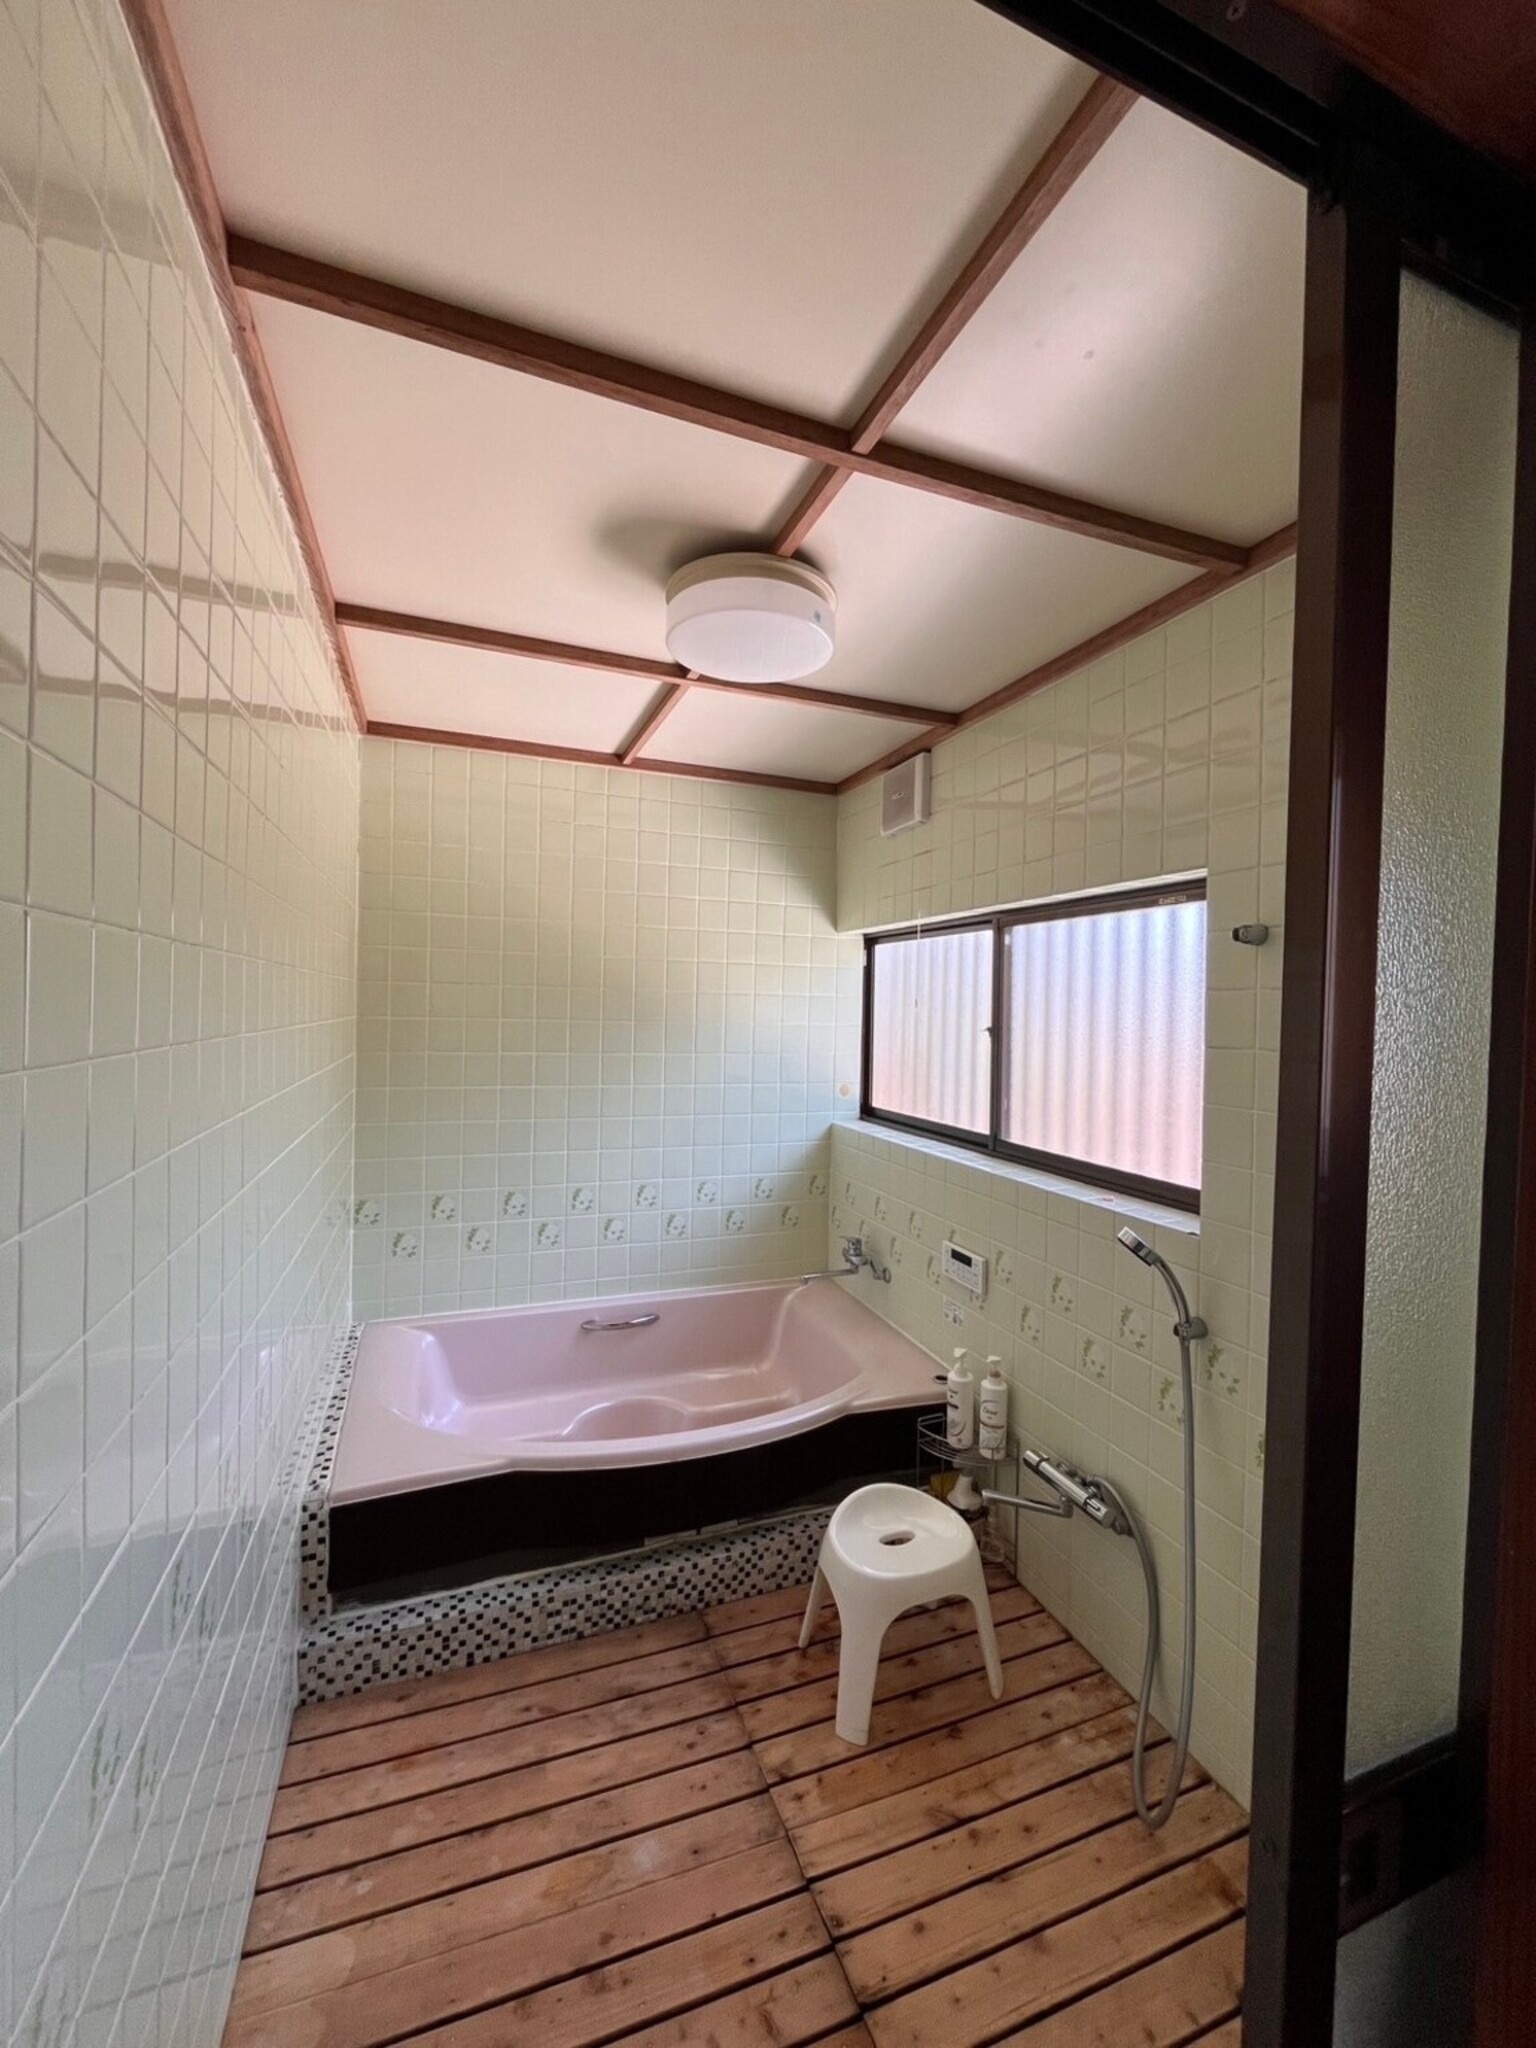 【最大15名】一棟貸し古民家の完全プライベート空間でBBQ・サウナ・露天風呂をご堪能いただけます!